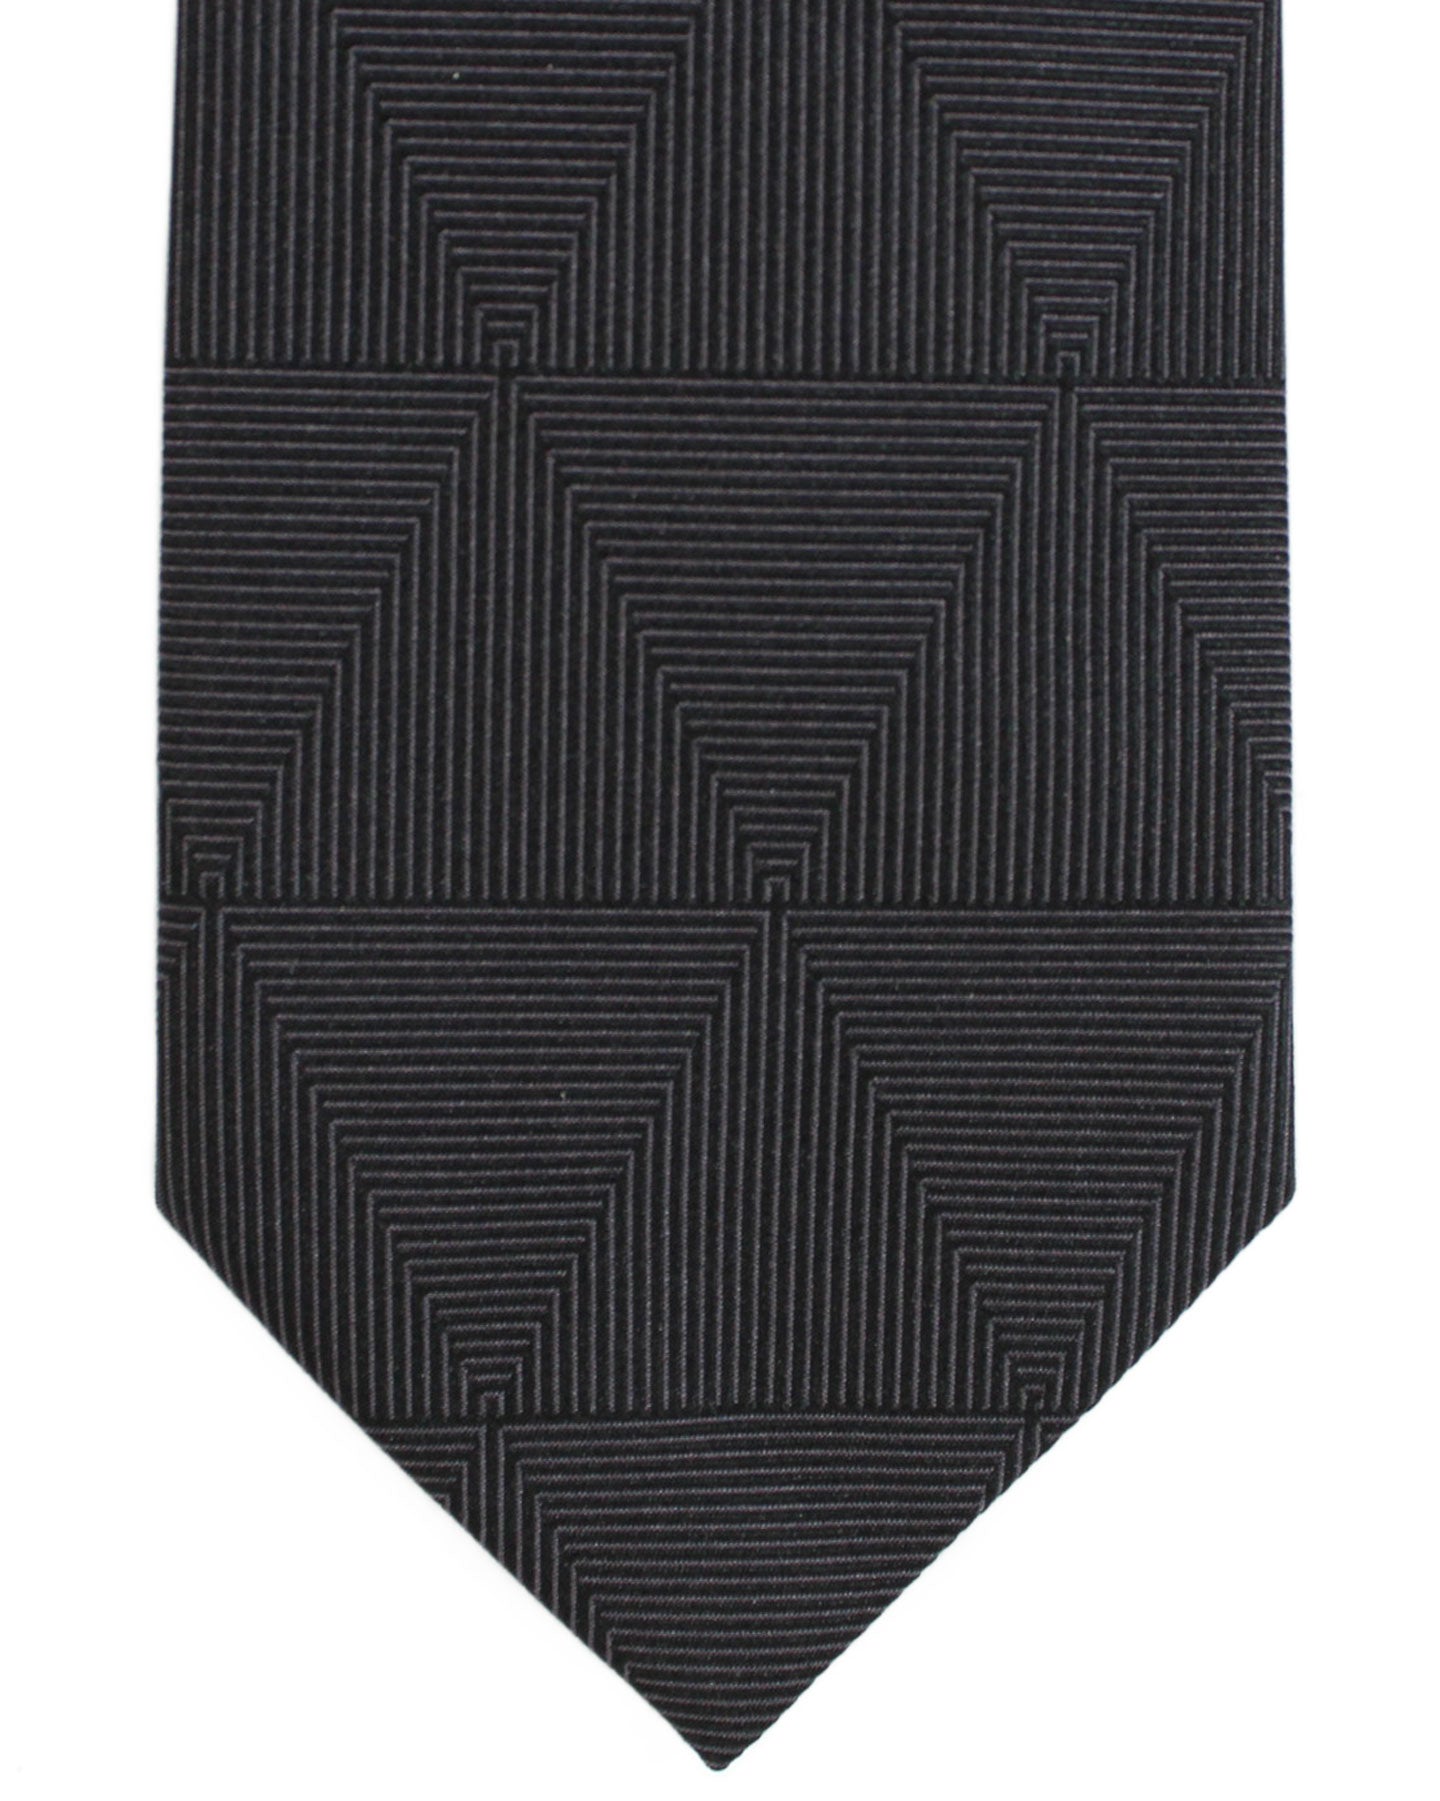 Armani Silk Tie Dark Blue Gray Geometric Armani Collezioni